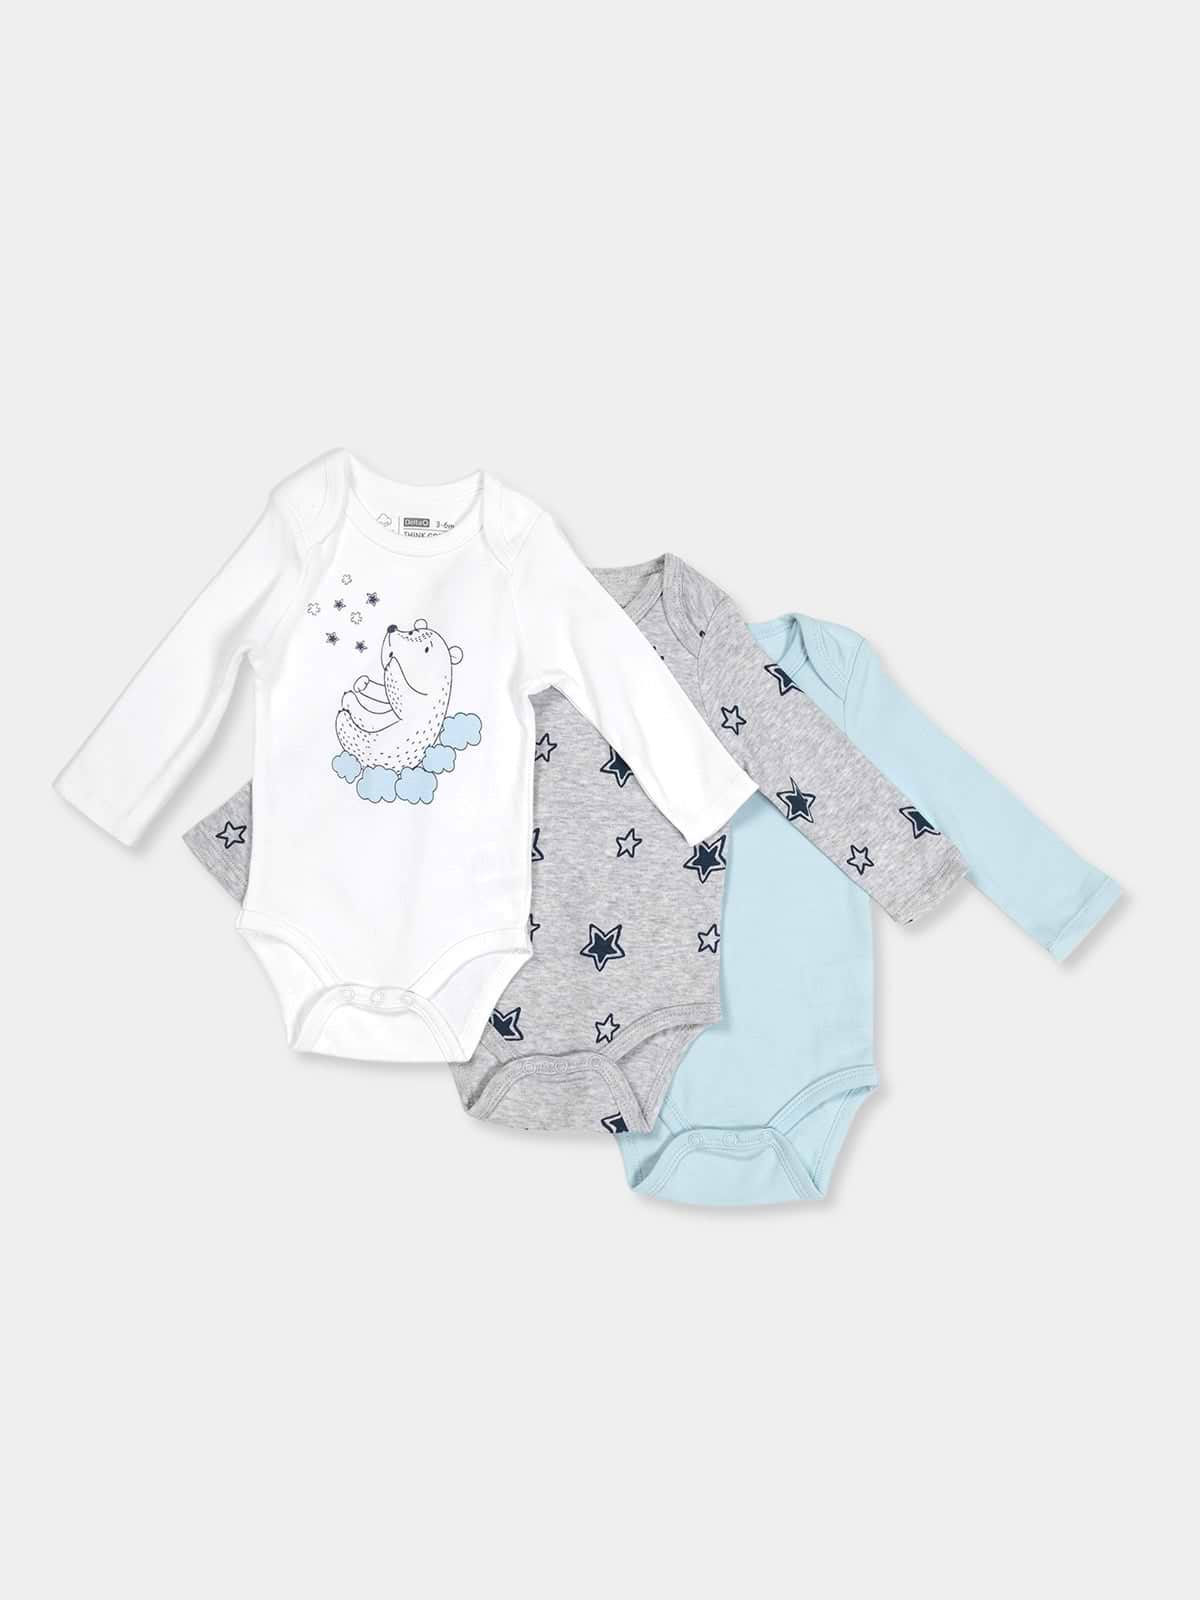 3 בגדי גוף ארוכים במארז STAR BABY / תינוקות- Delta|דלתא